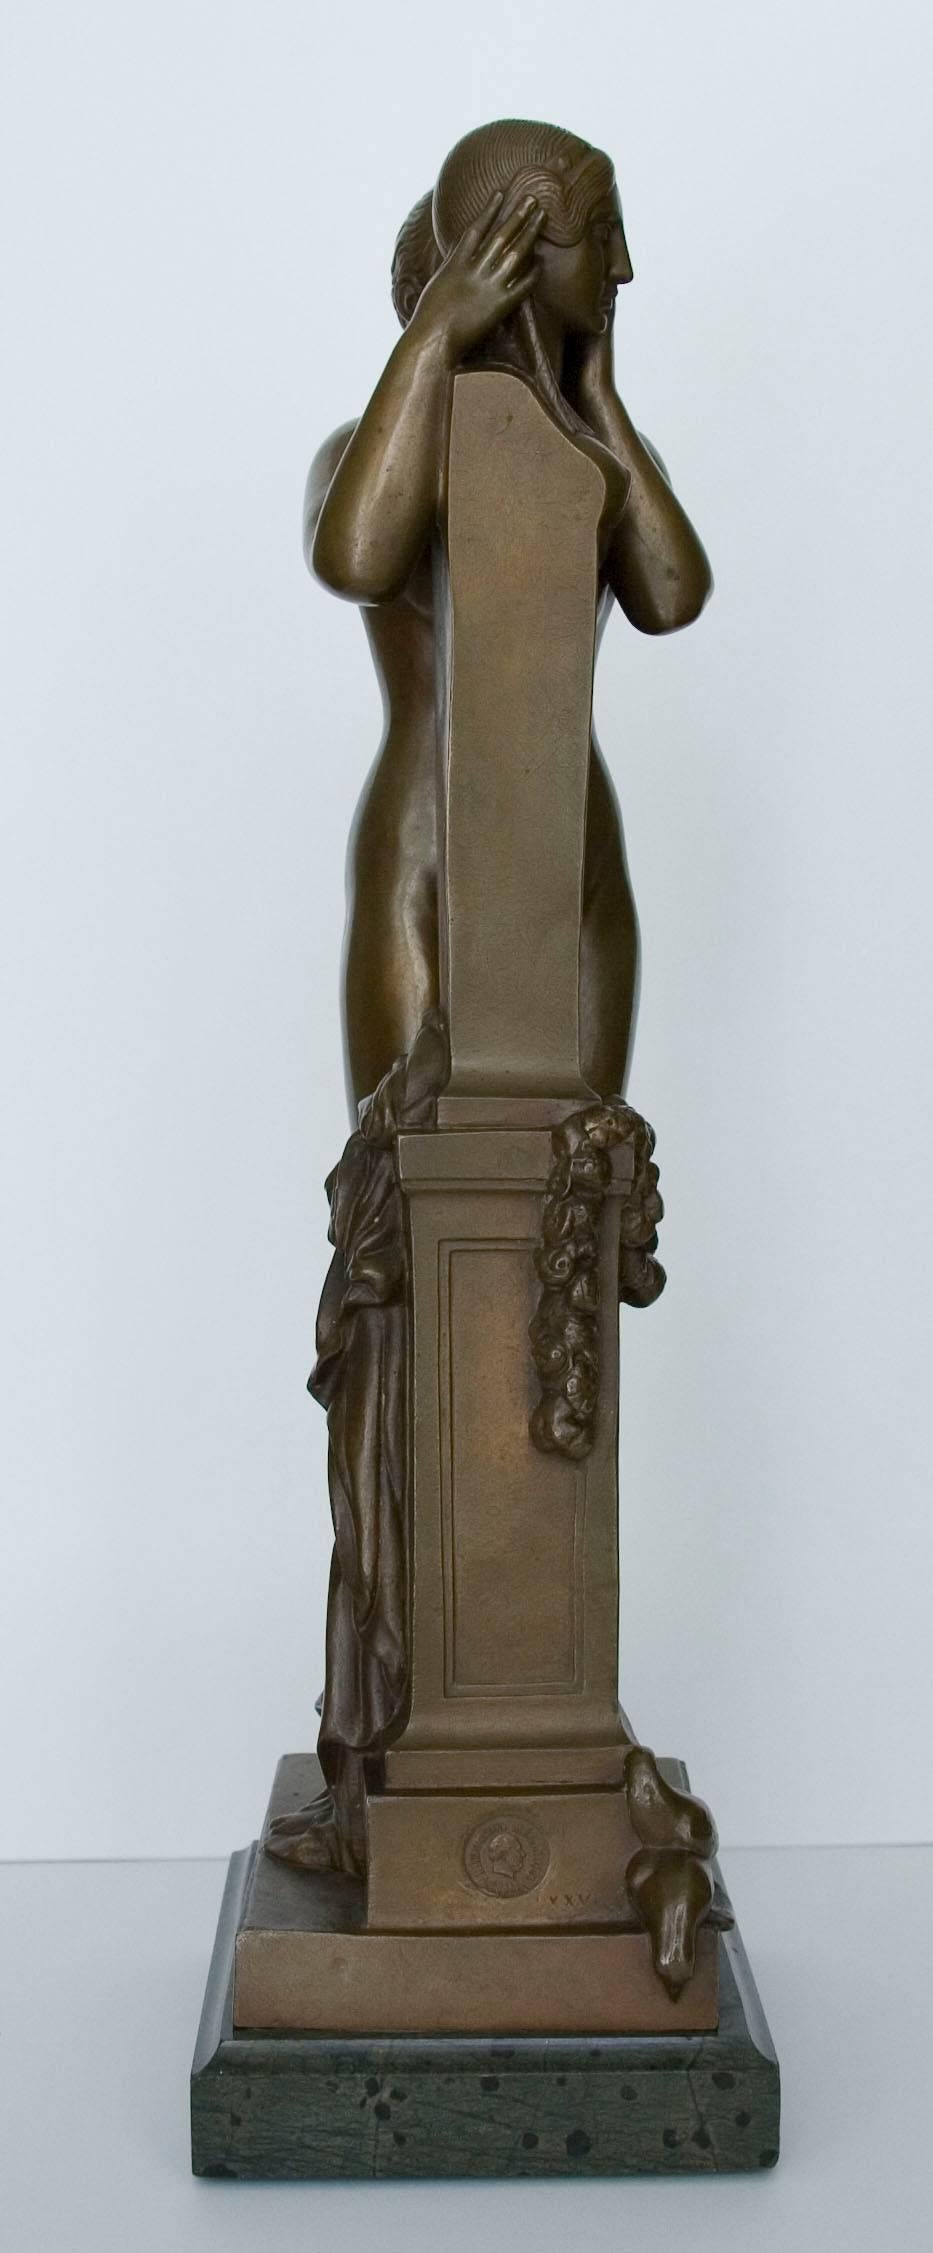 Premier secret confié à Vénus (First secret entrusted to Venus) - Bronze - Sculpture by François Jouffroy